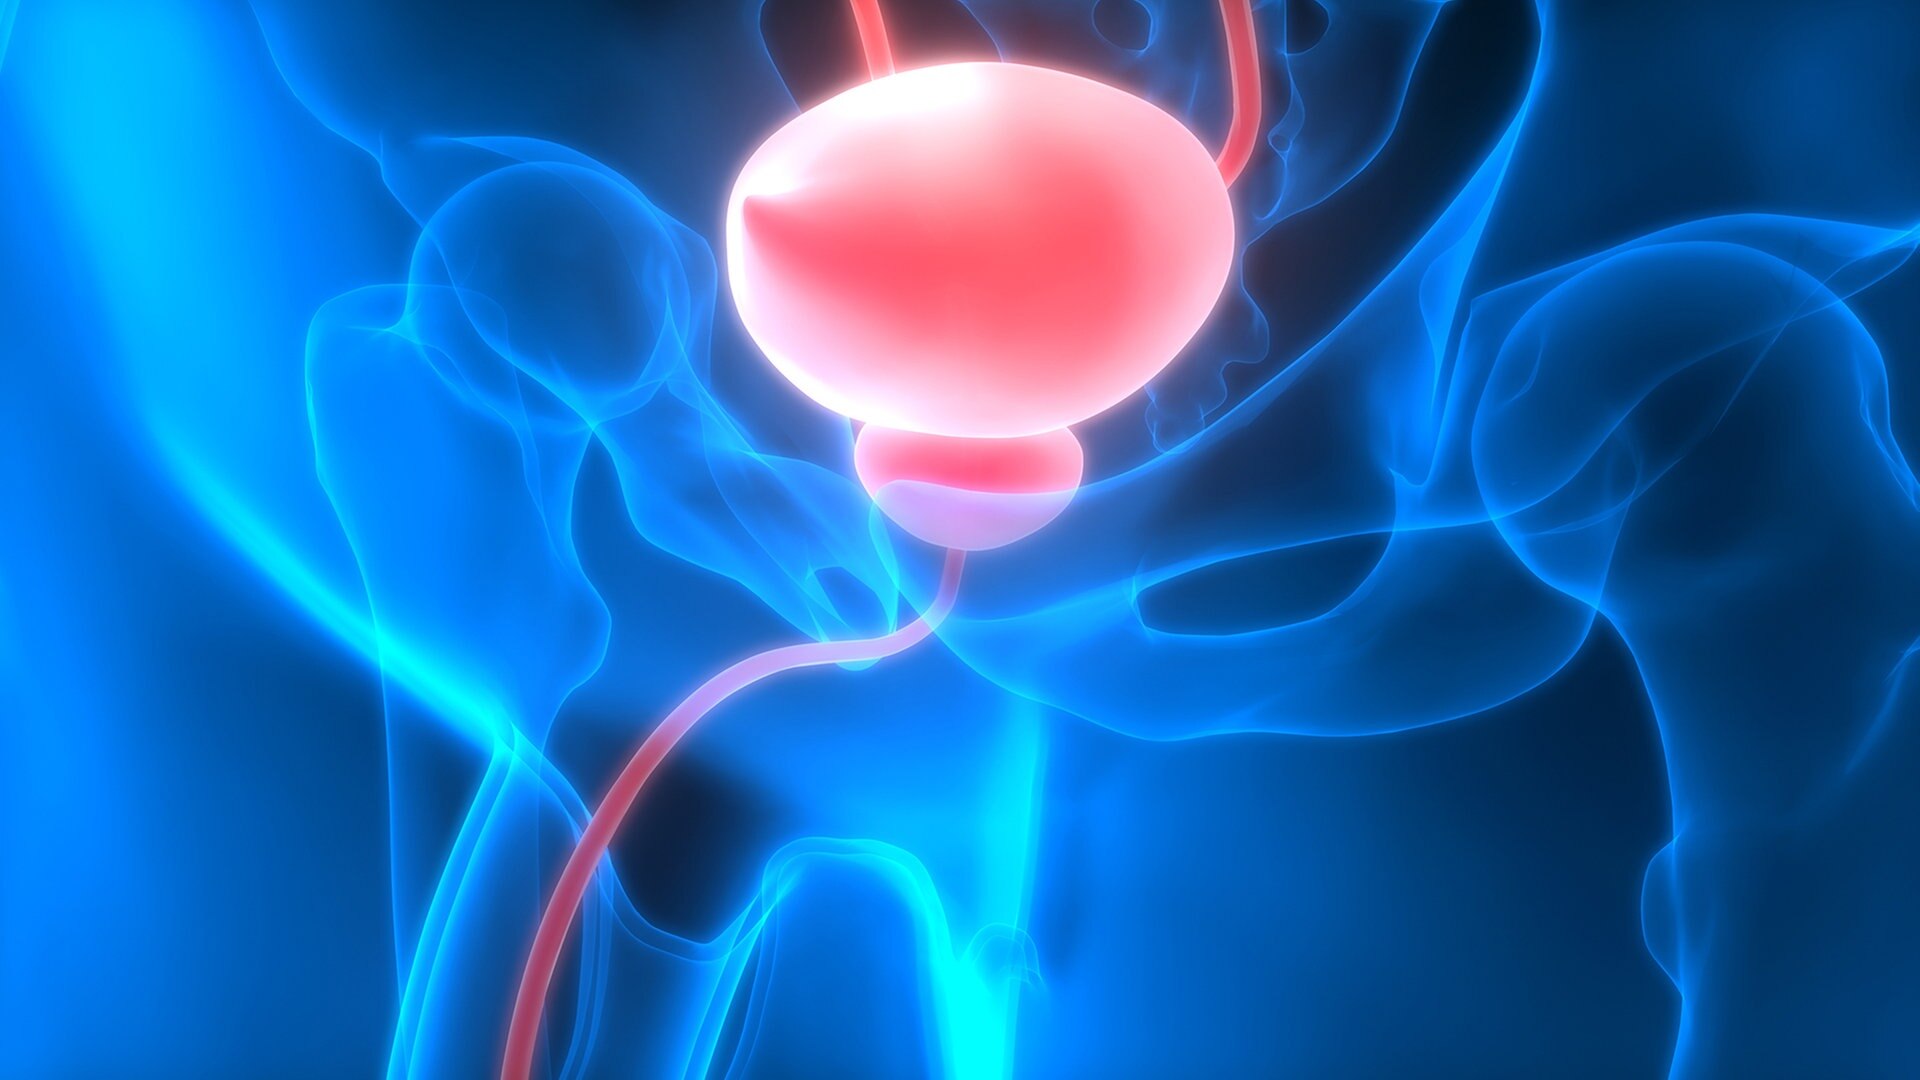 prostata verkleinern ohne op